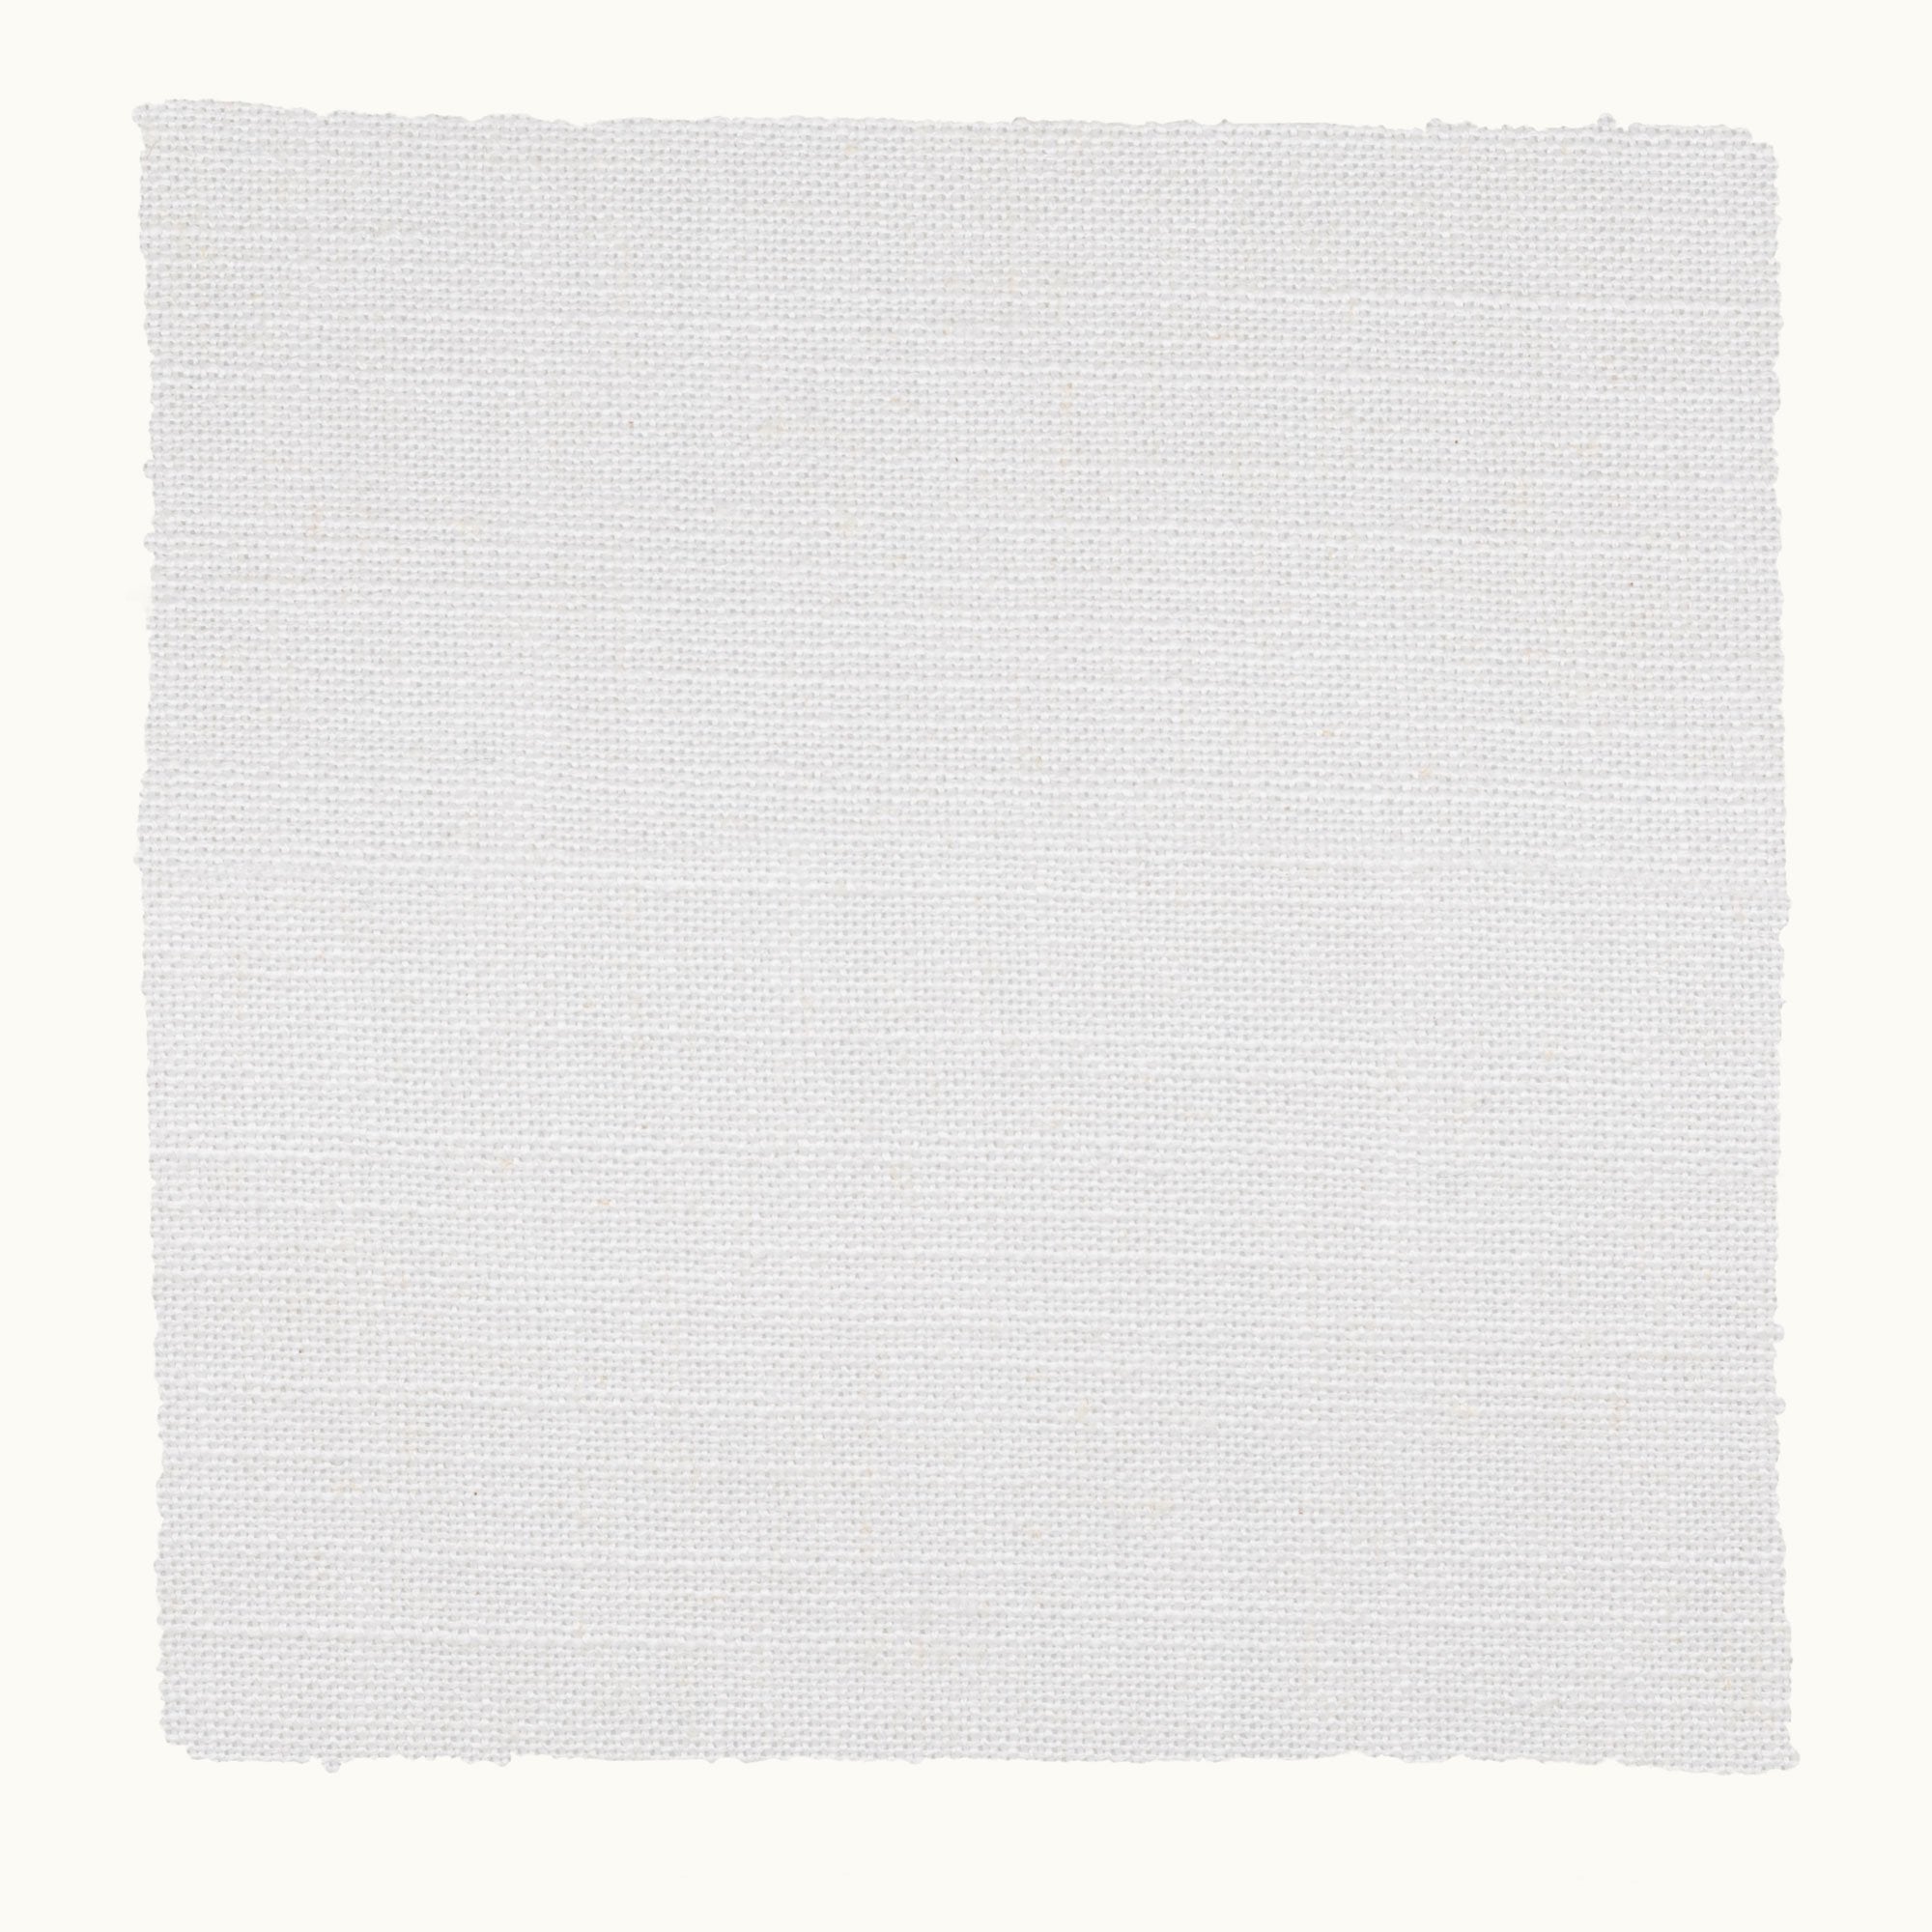 Performance Linen - White